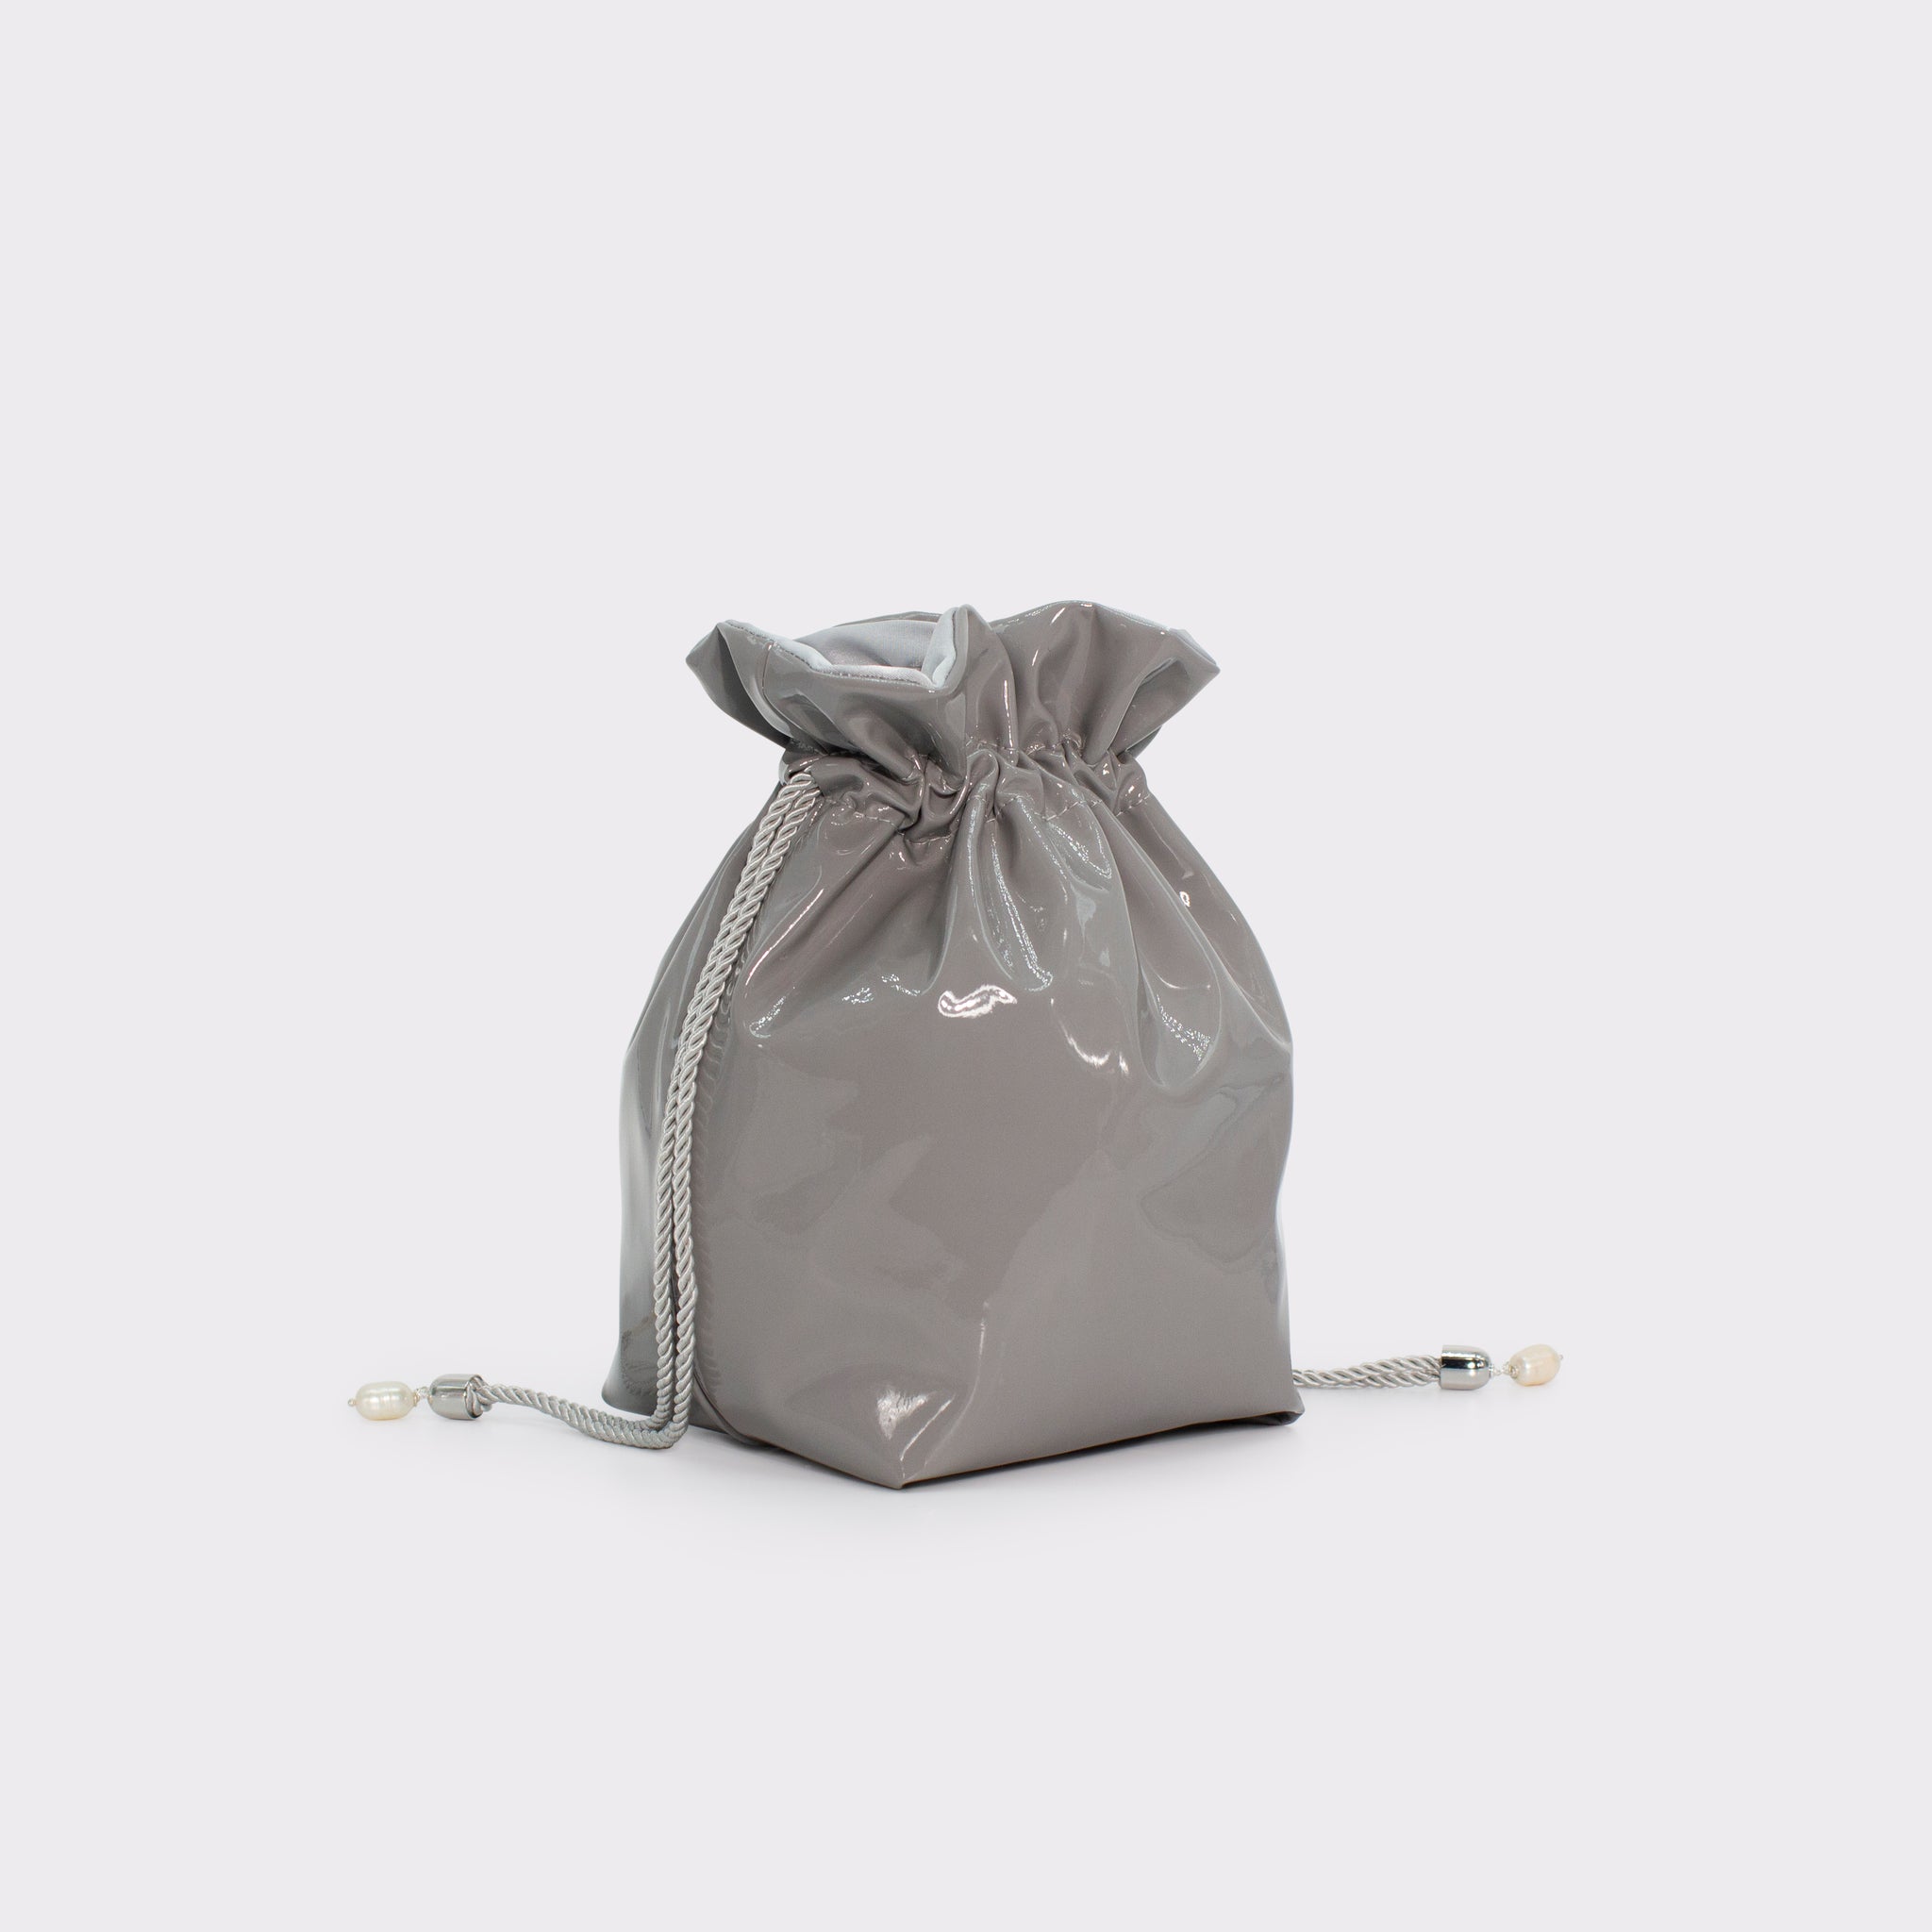 La Glossy bucket bag in colorazione ultimate gray